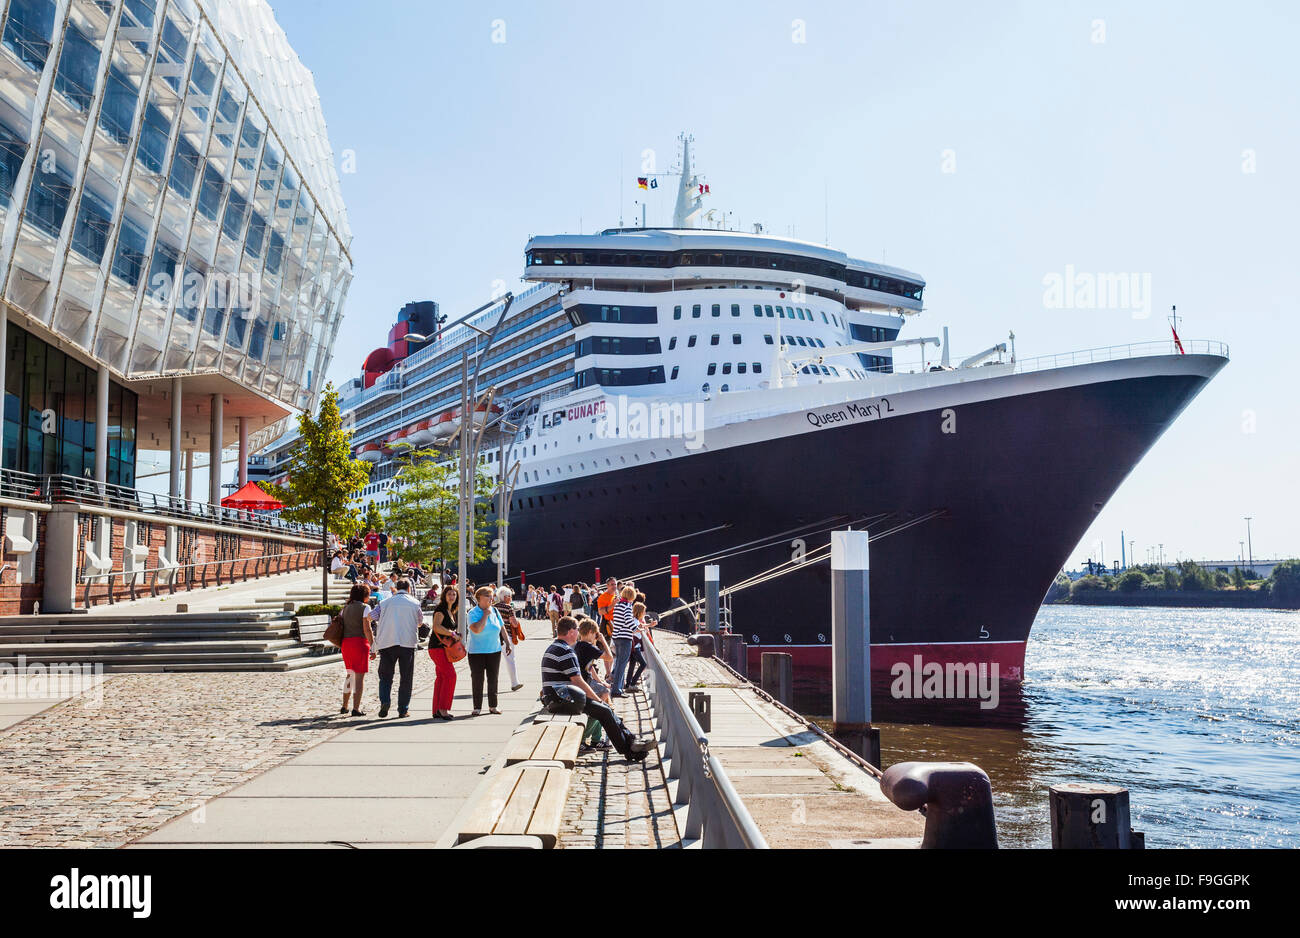 Alemania, la Ciudad Libre y Hanseática de Hamburgo, Strandkai en HafenCity, Cunard Liner Queen Mary II, en el centro de Cruceros de Hamburgo Foto de stock